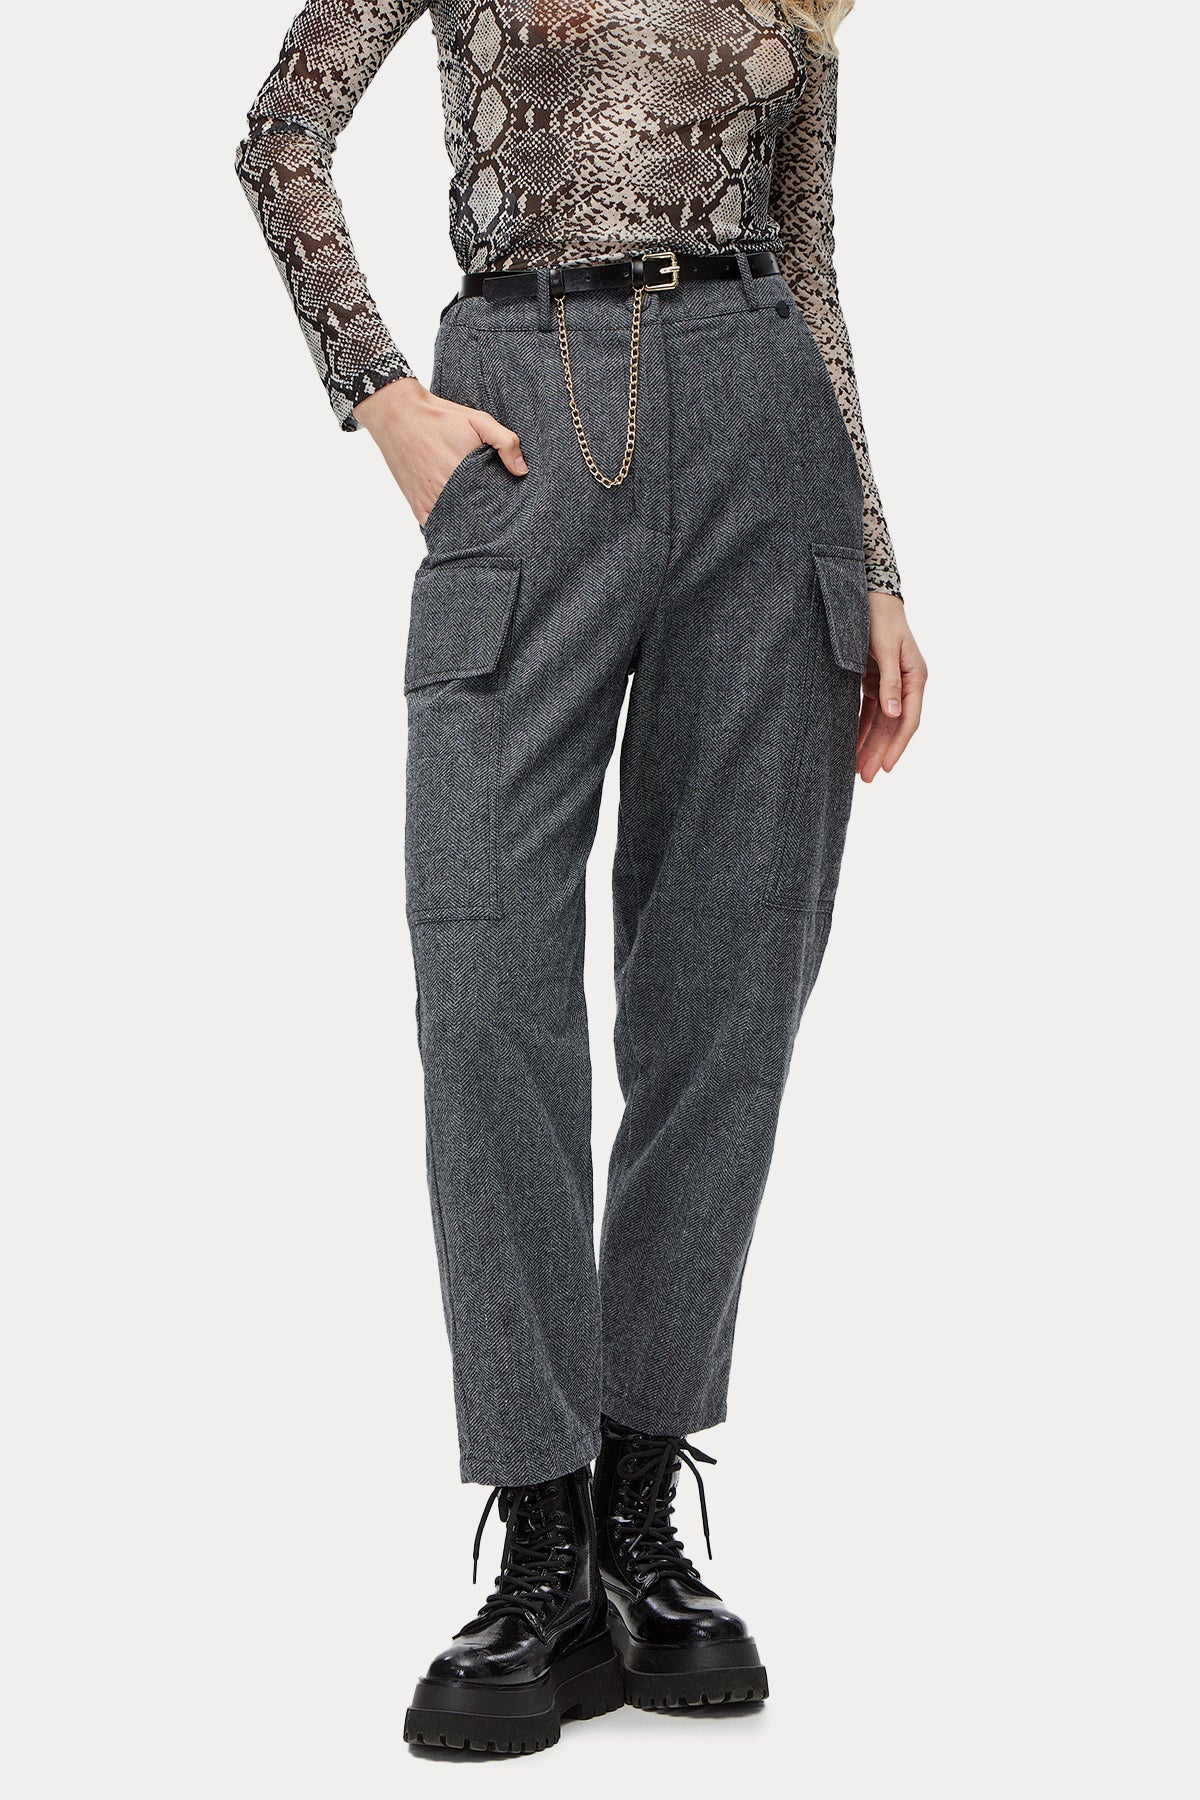 Bsb Geniş Kesim Beli Lastikli Kargo Pantolon-Libas Trendy Fashion Store